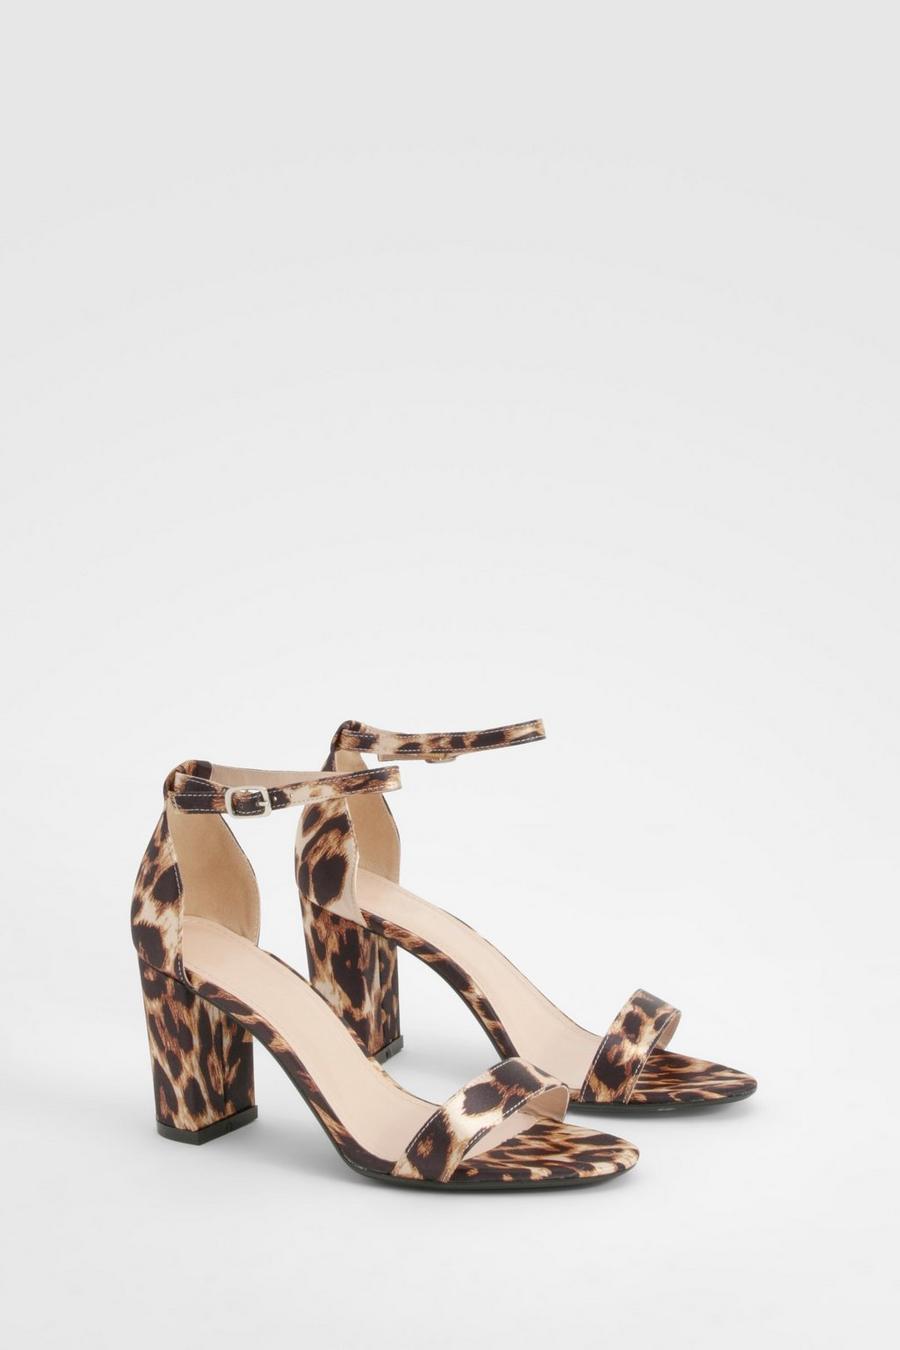 Sandales à talon carré et imprimé léopard, Leopard